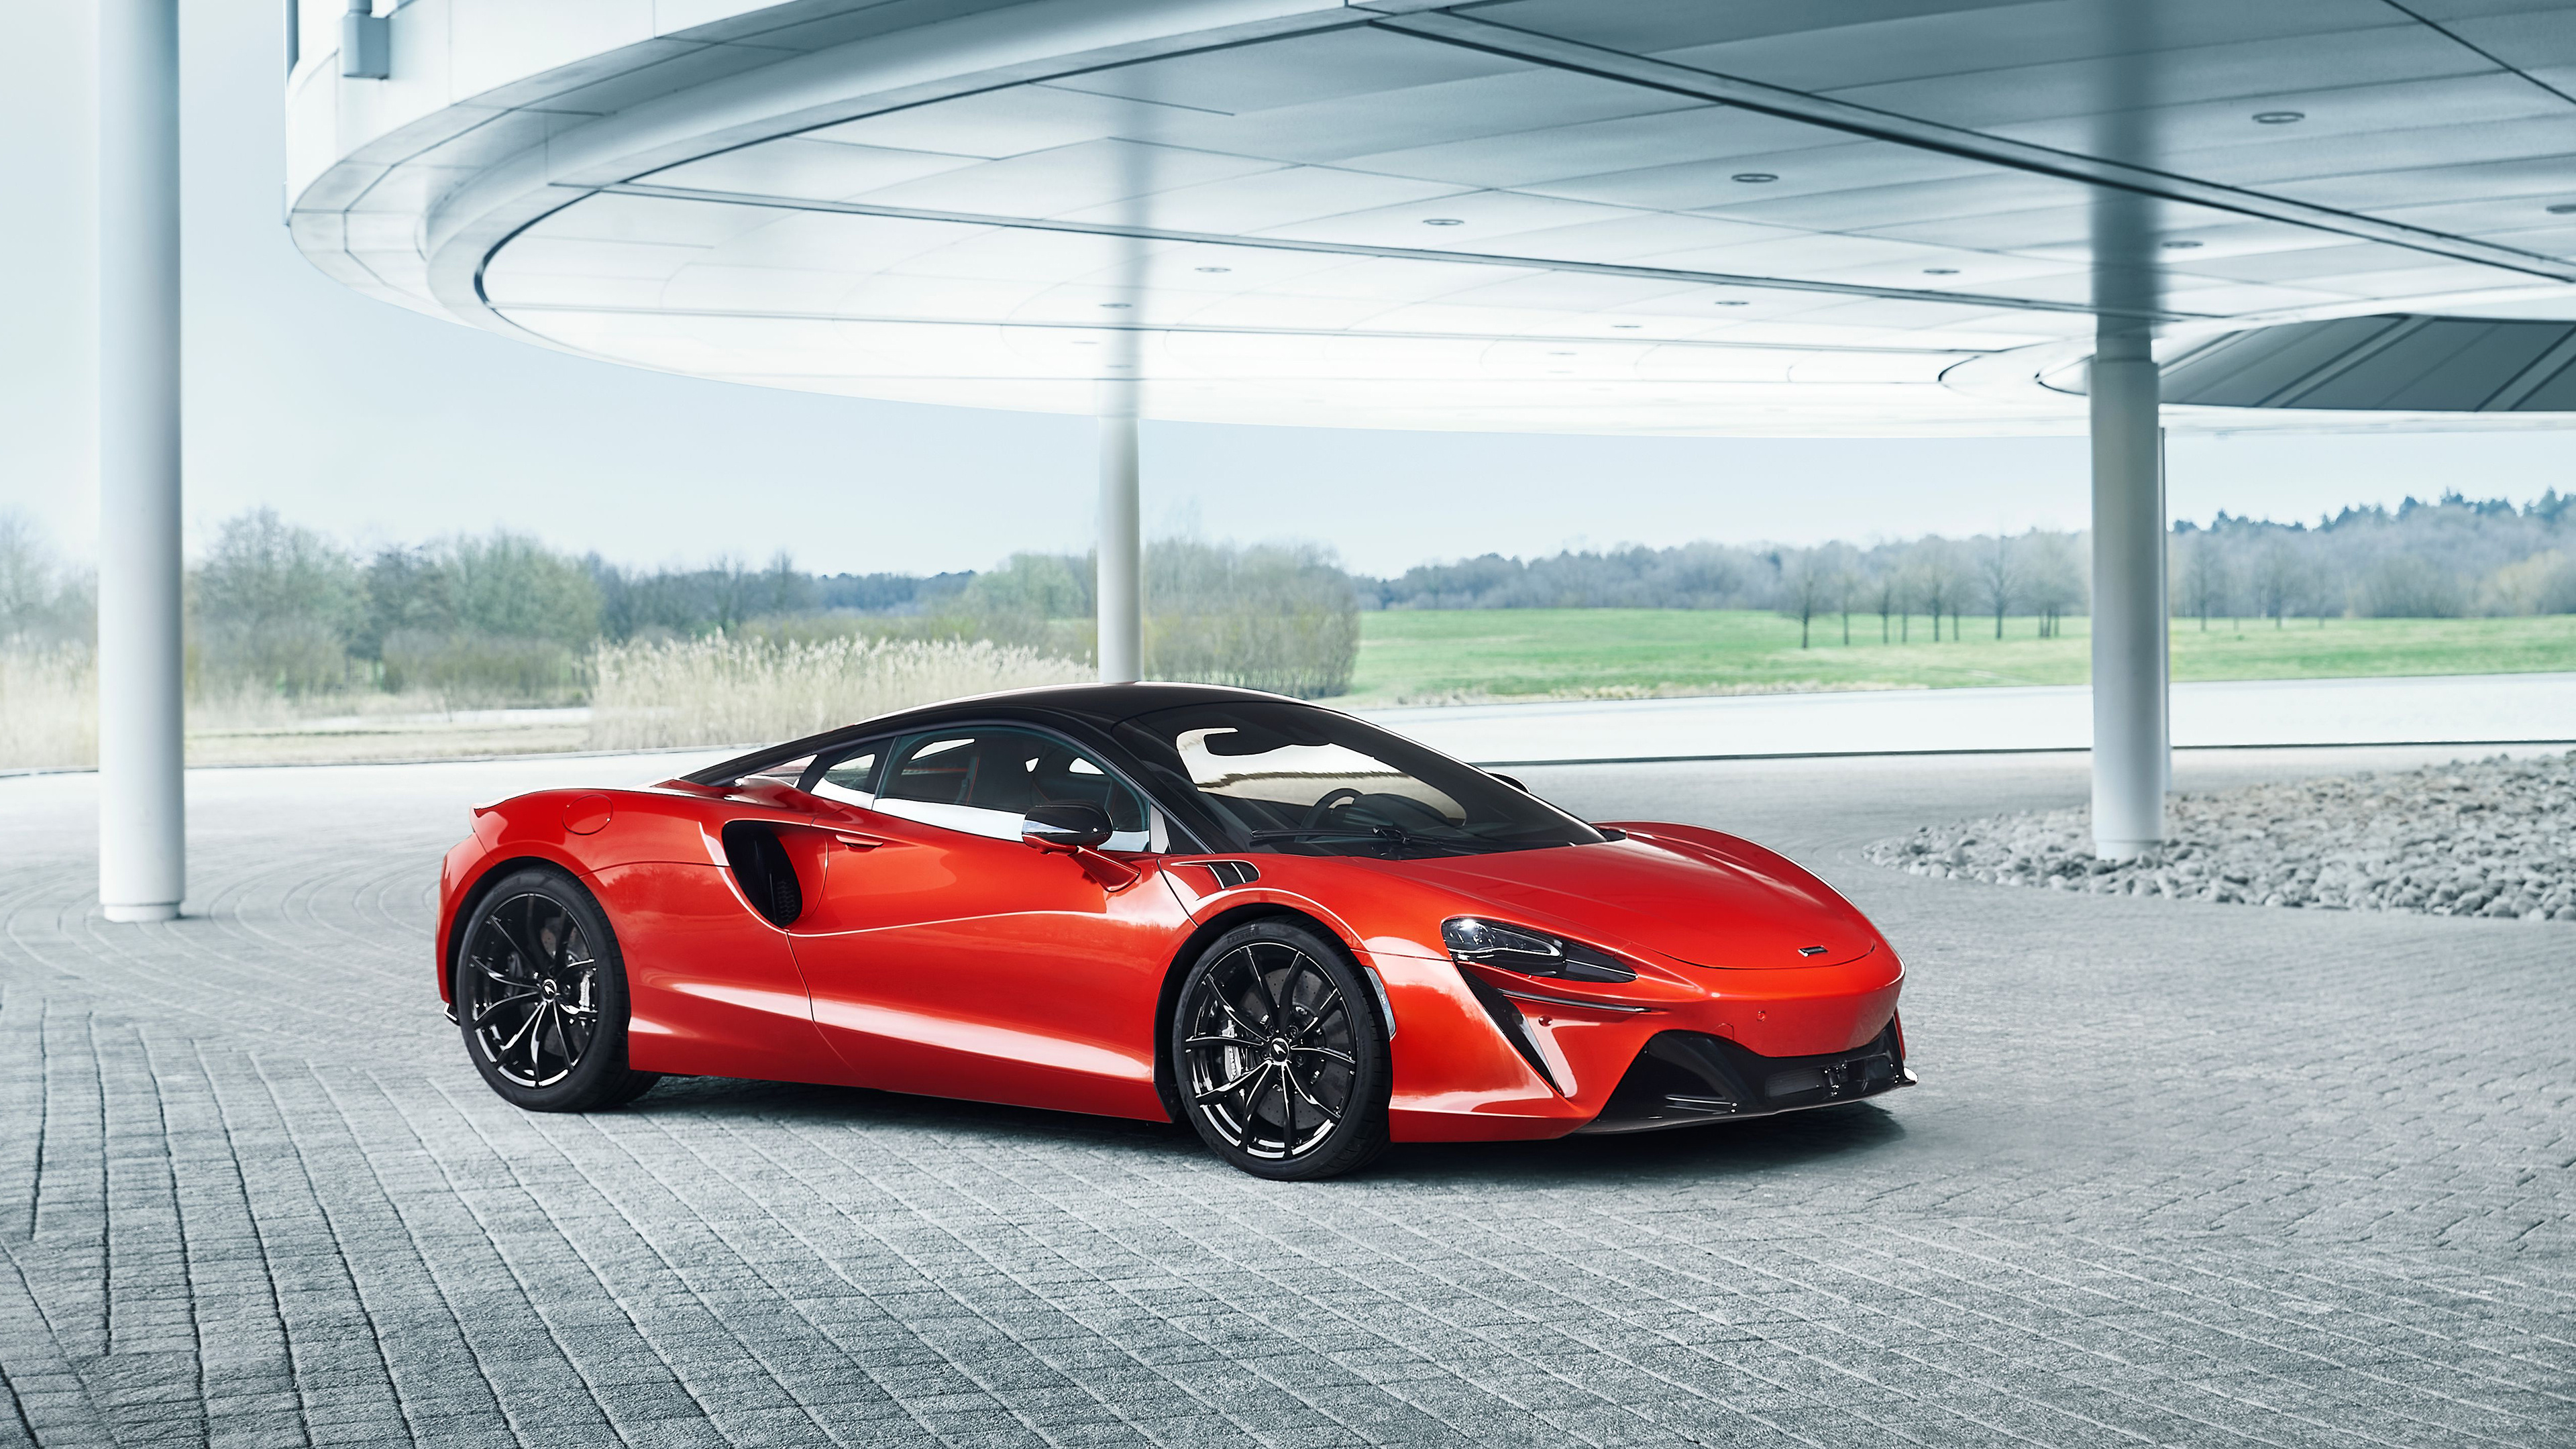 McLaren Artura, Hybrid sports car, 2022 model, High-resolution wallpapers, 3840x2160 4K Desktop